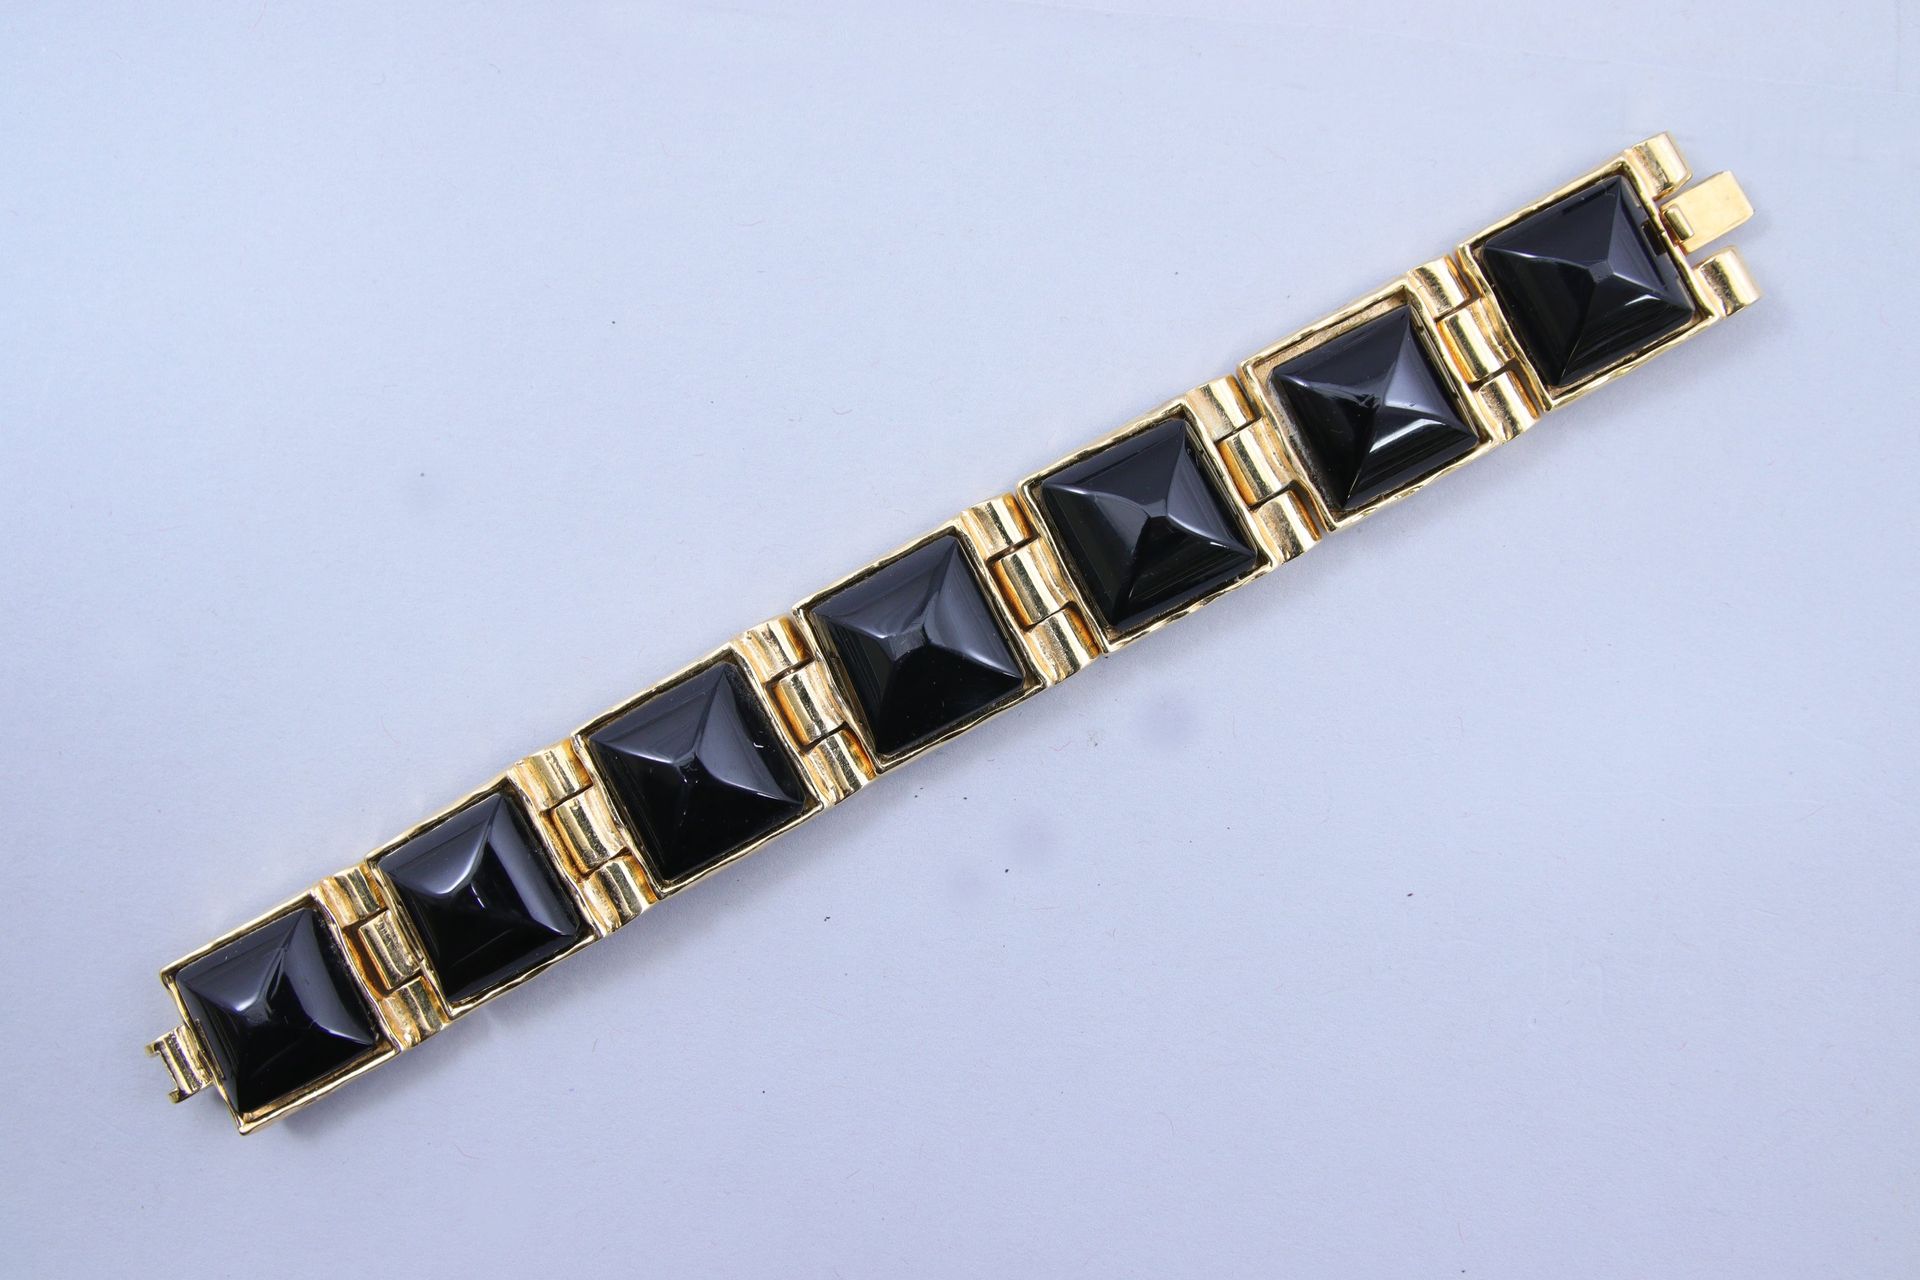 Null 香奈儿 
铰接式手镯 

鎏金金属，由七个四角形链节组成，上面装饰着黑色树脂凸圆形宝石。 
有签名和编号的 "429"。

长18.5厘米。